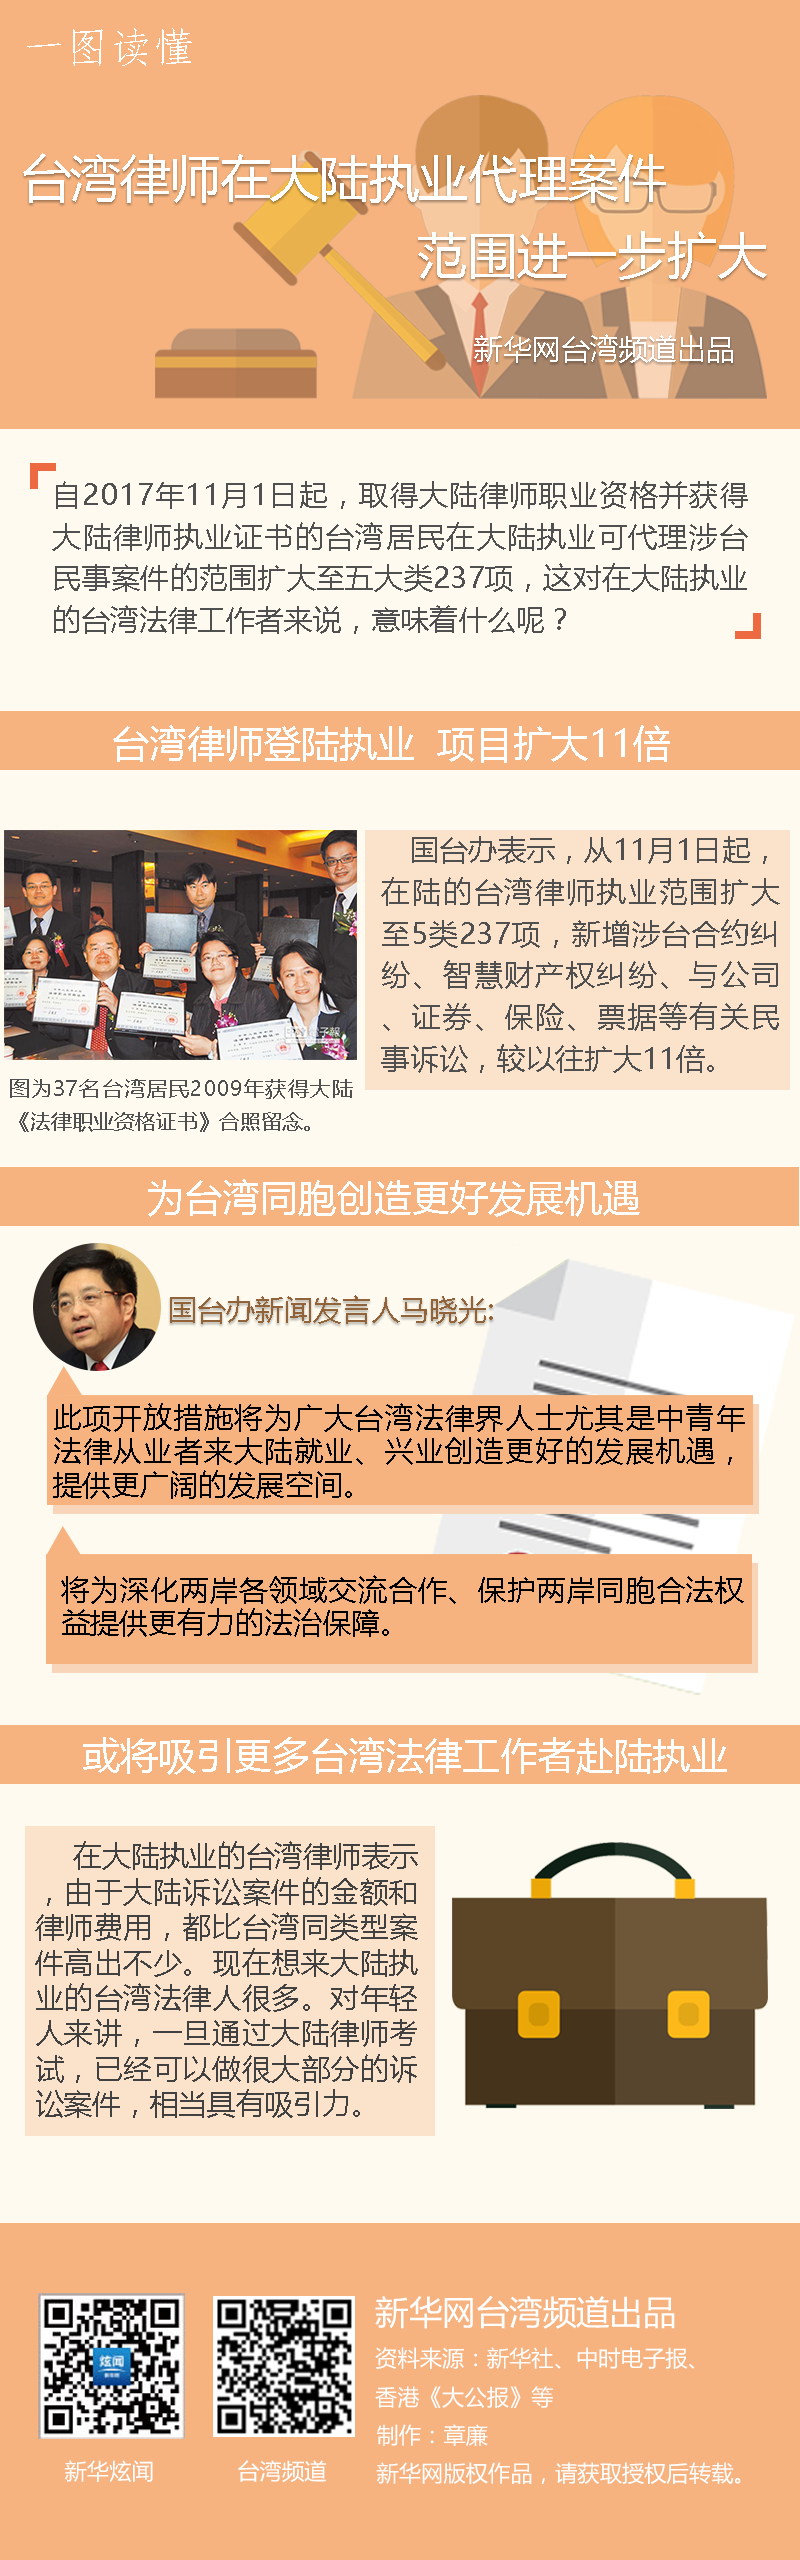 台湾律师在大陆执业代理案件范围进一步扩大